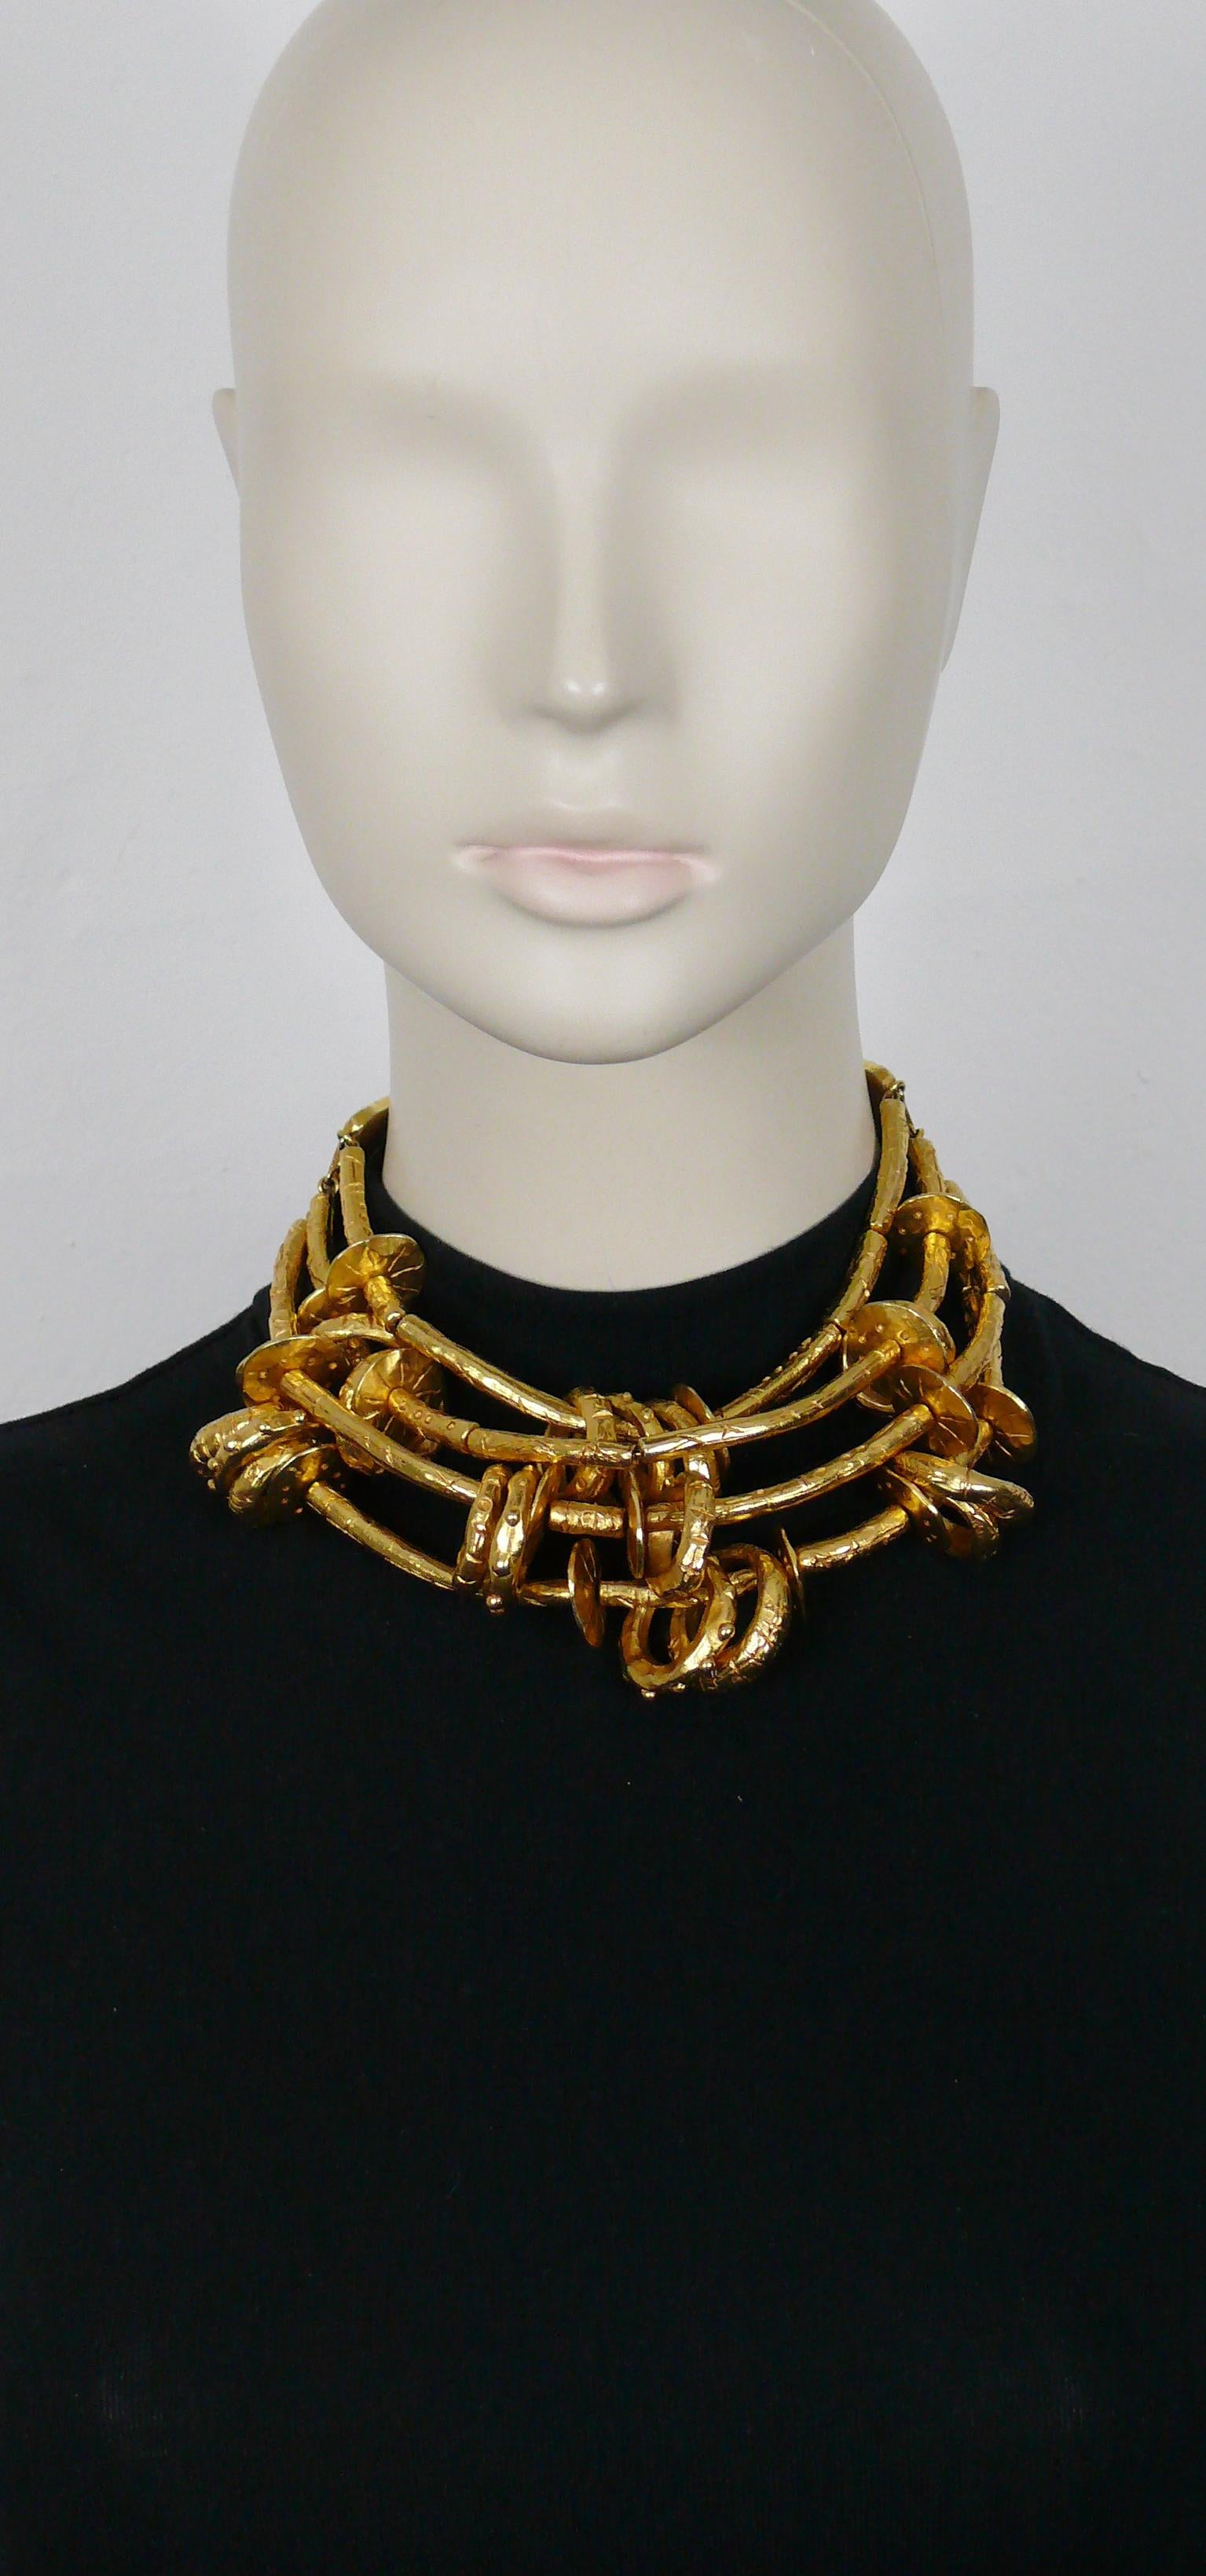 CHRISTIAN LACROIX Vintage seltene massive ethnisch inspirierte viersträngige goldfarbene Halskette mit skarifizierten Gliedern und Ringen. Beide Enden sind aus tiefrotem, genopptem Leder gefertigt und mit orangefarbenen Harz-Cabochons